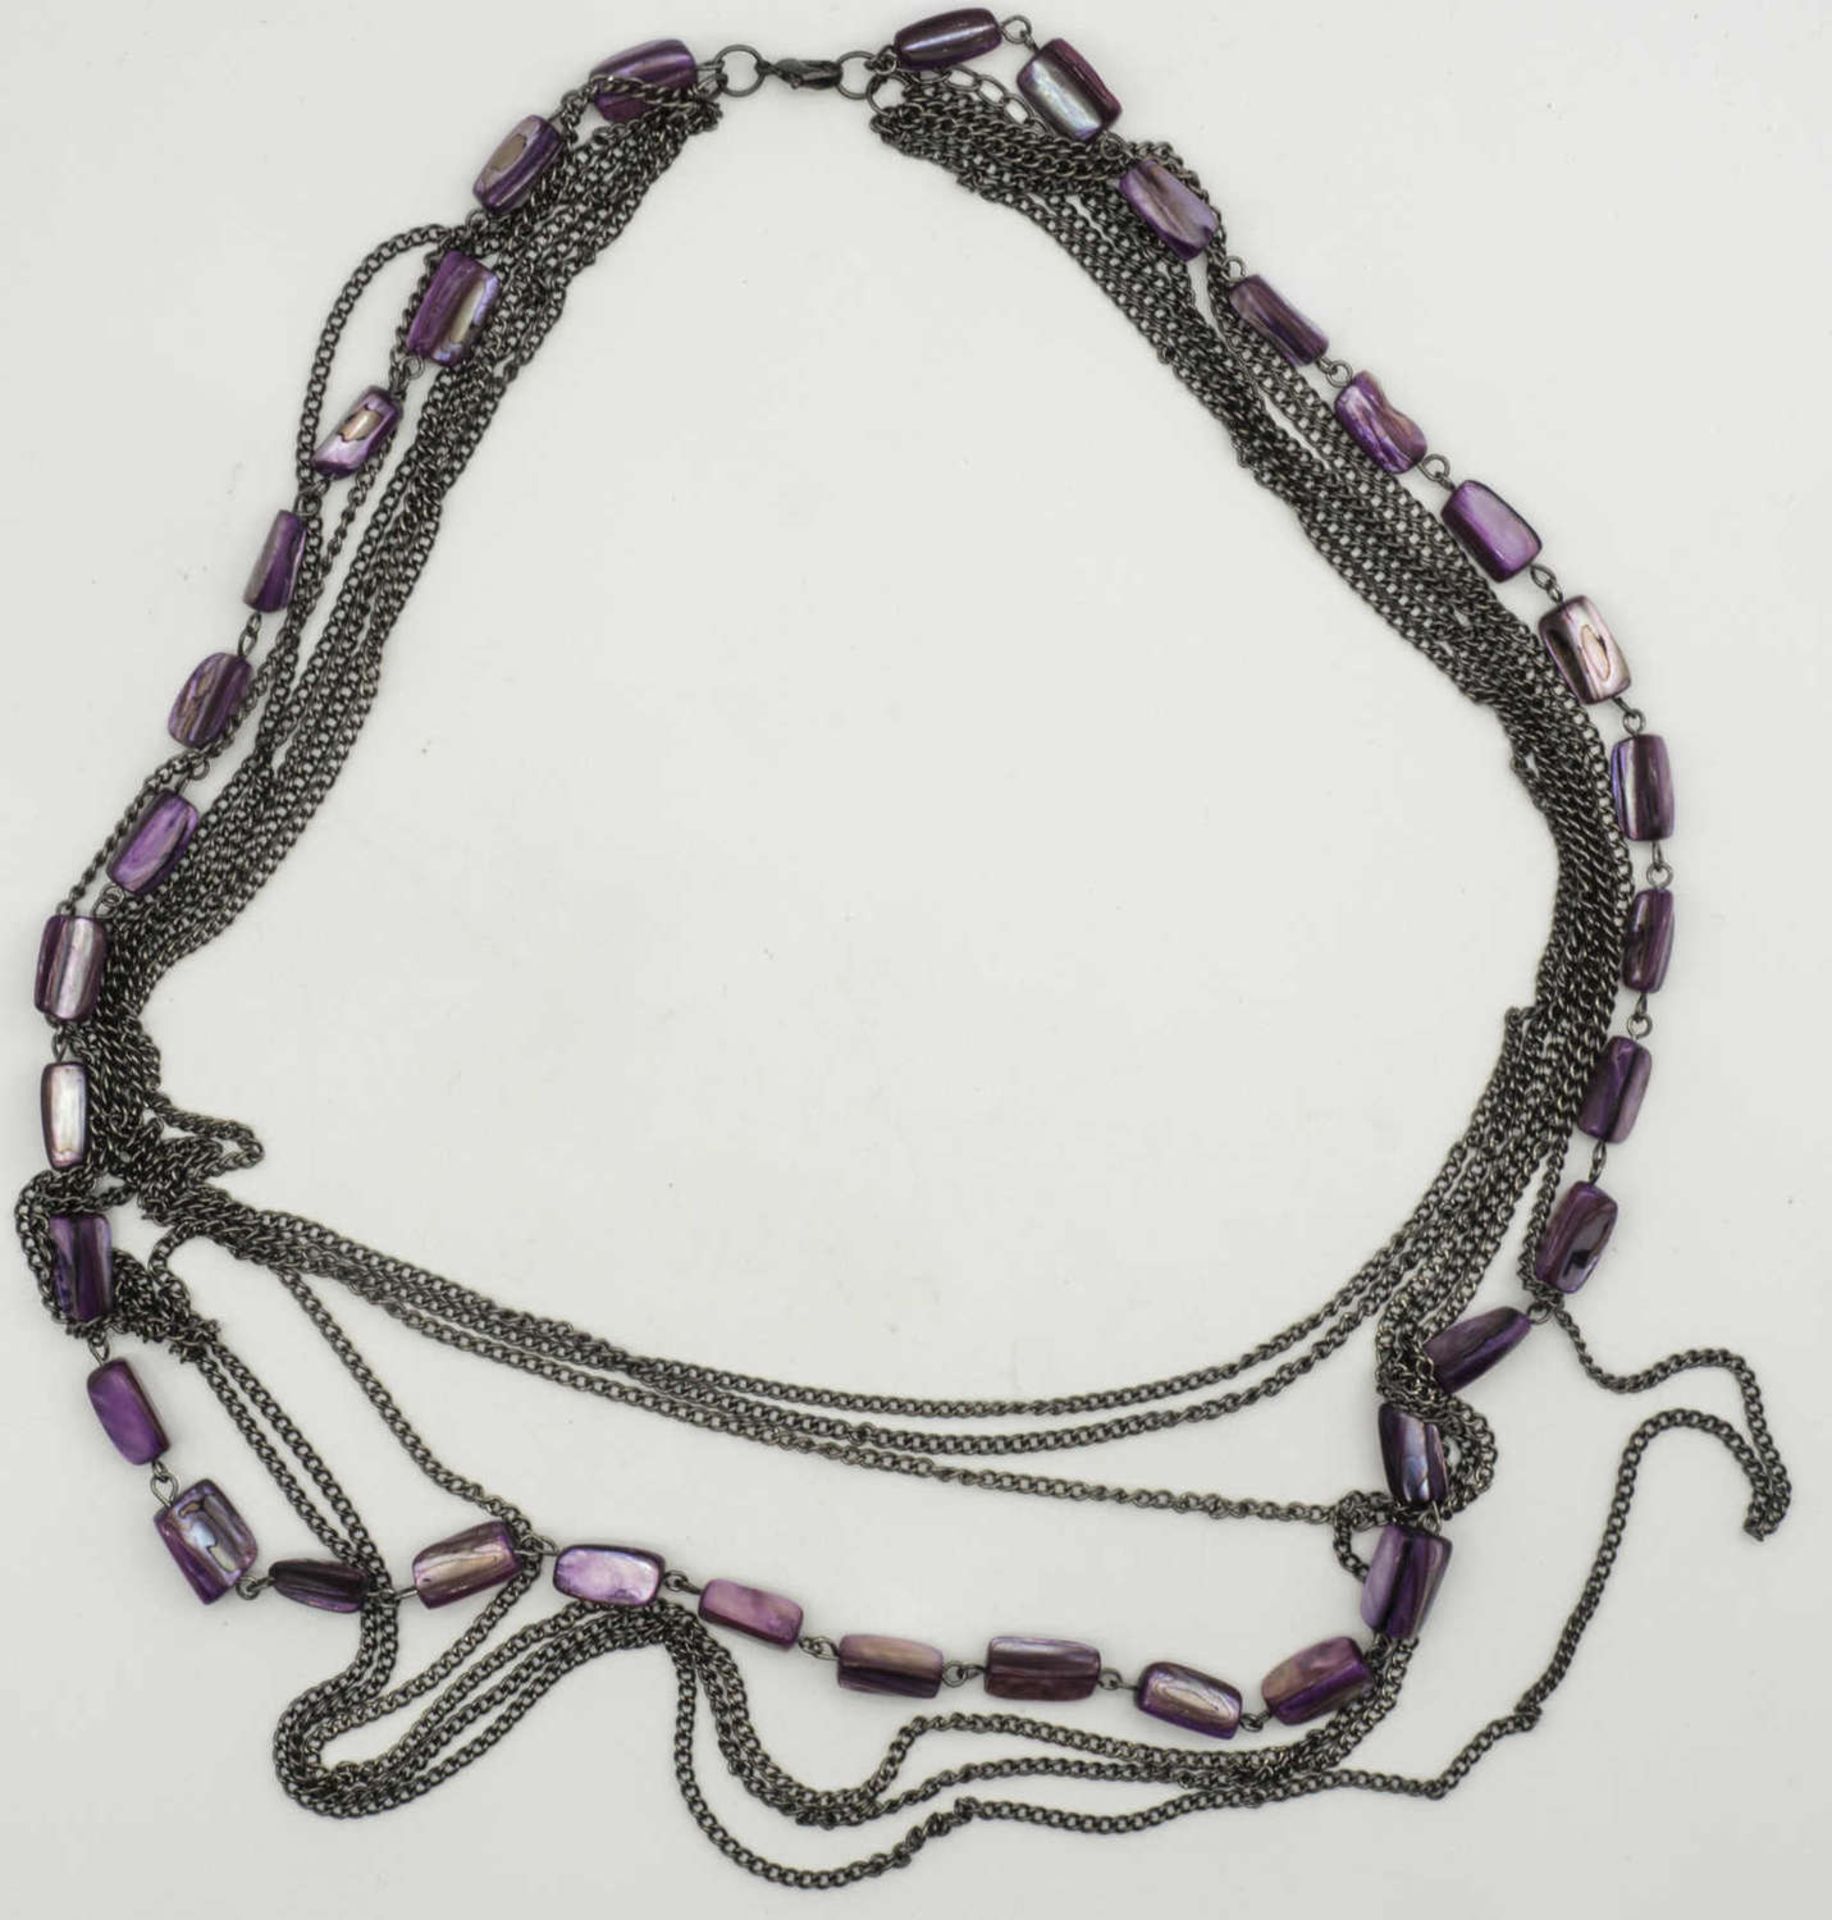 Kette, 7 - Stränge, davon eine mit violetten, irisierenden Steinen. Länge: ca. 66 cm. Chain, 7